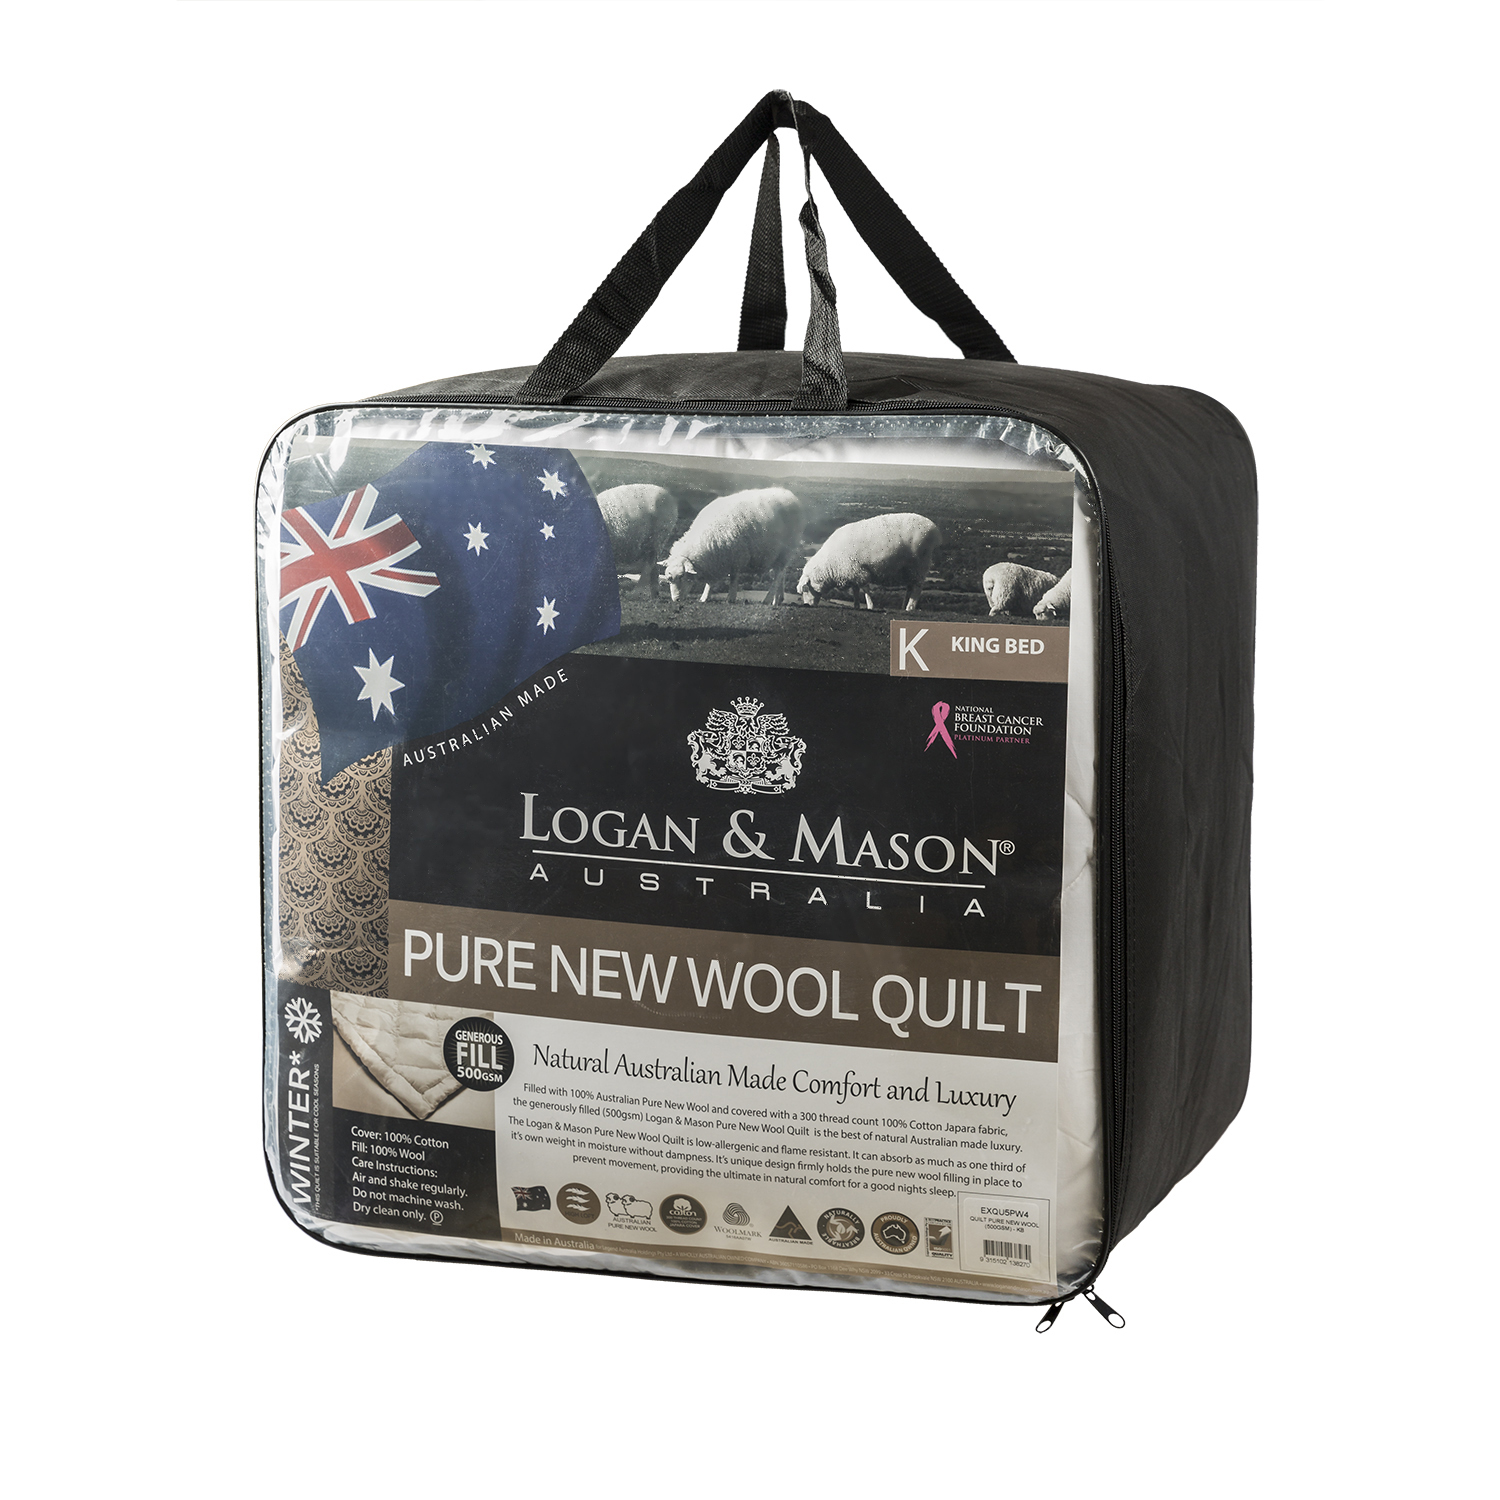 澳大利亚原产LOGAN & MASON纯羊毛冬被羊毛被子500gsm 白色 King Bed国王：245cm x 210cm